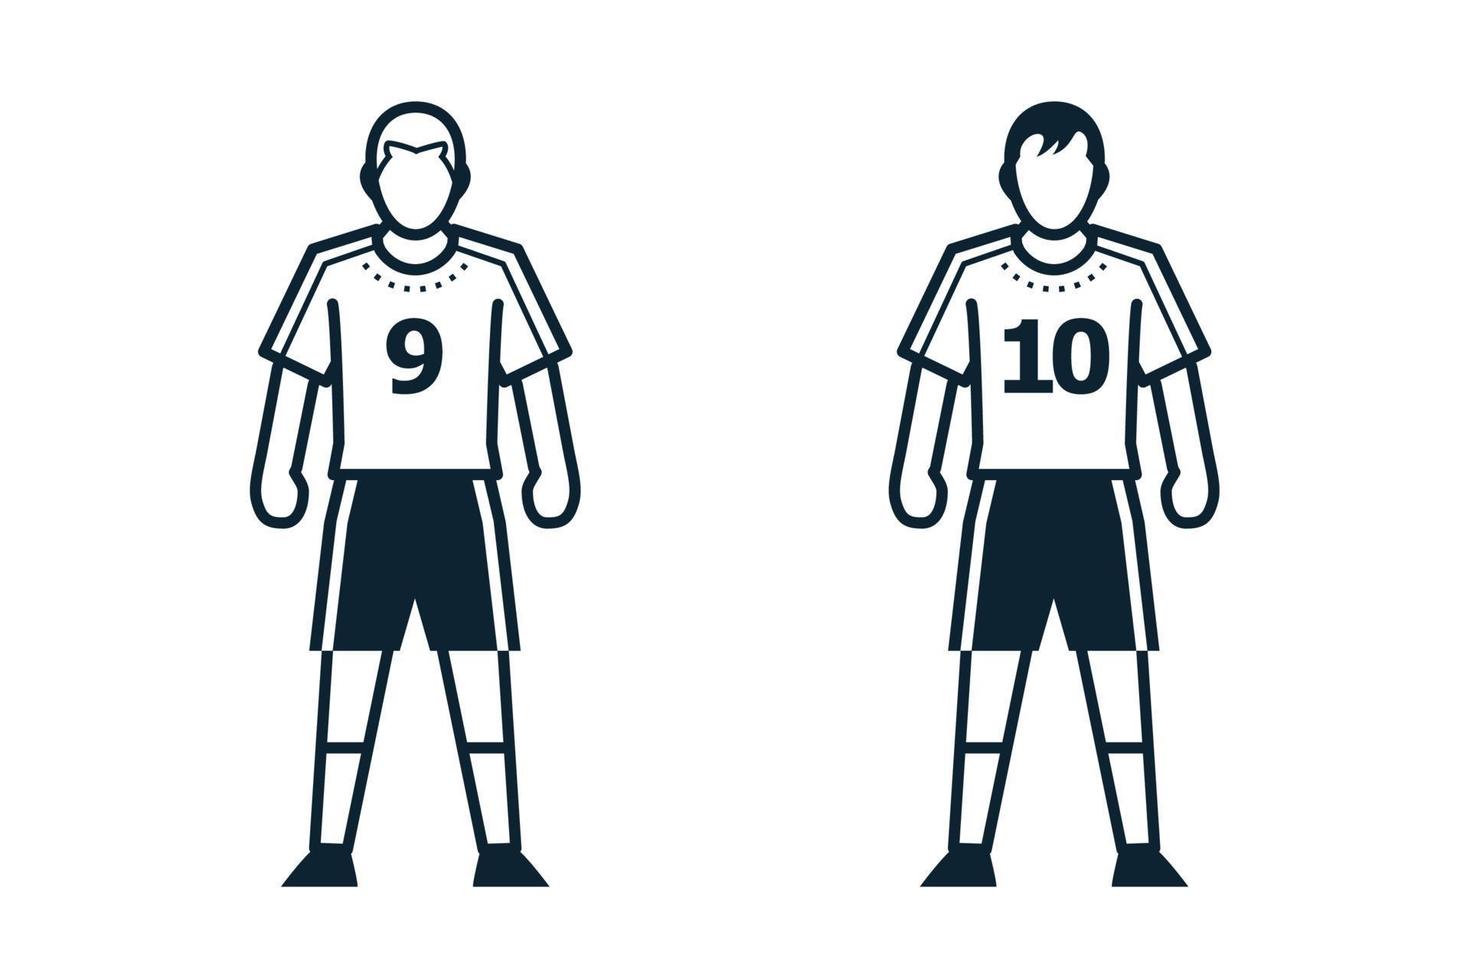 jugador de fútbol, personas e íconos de ropa con fondo blanco vector